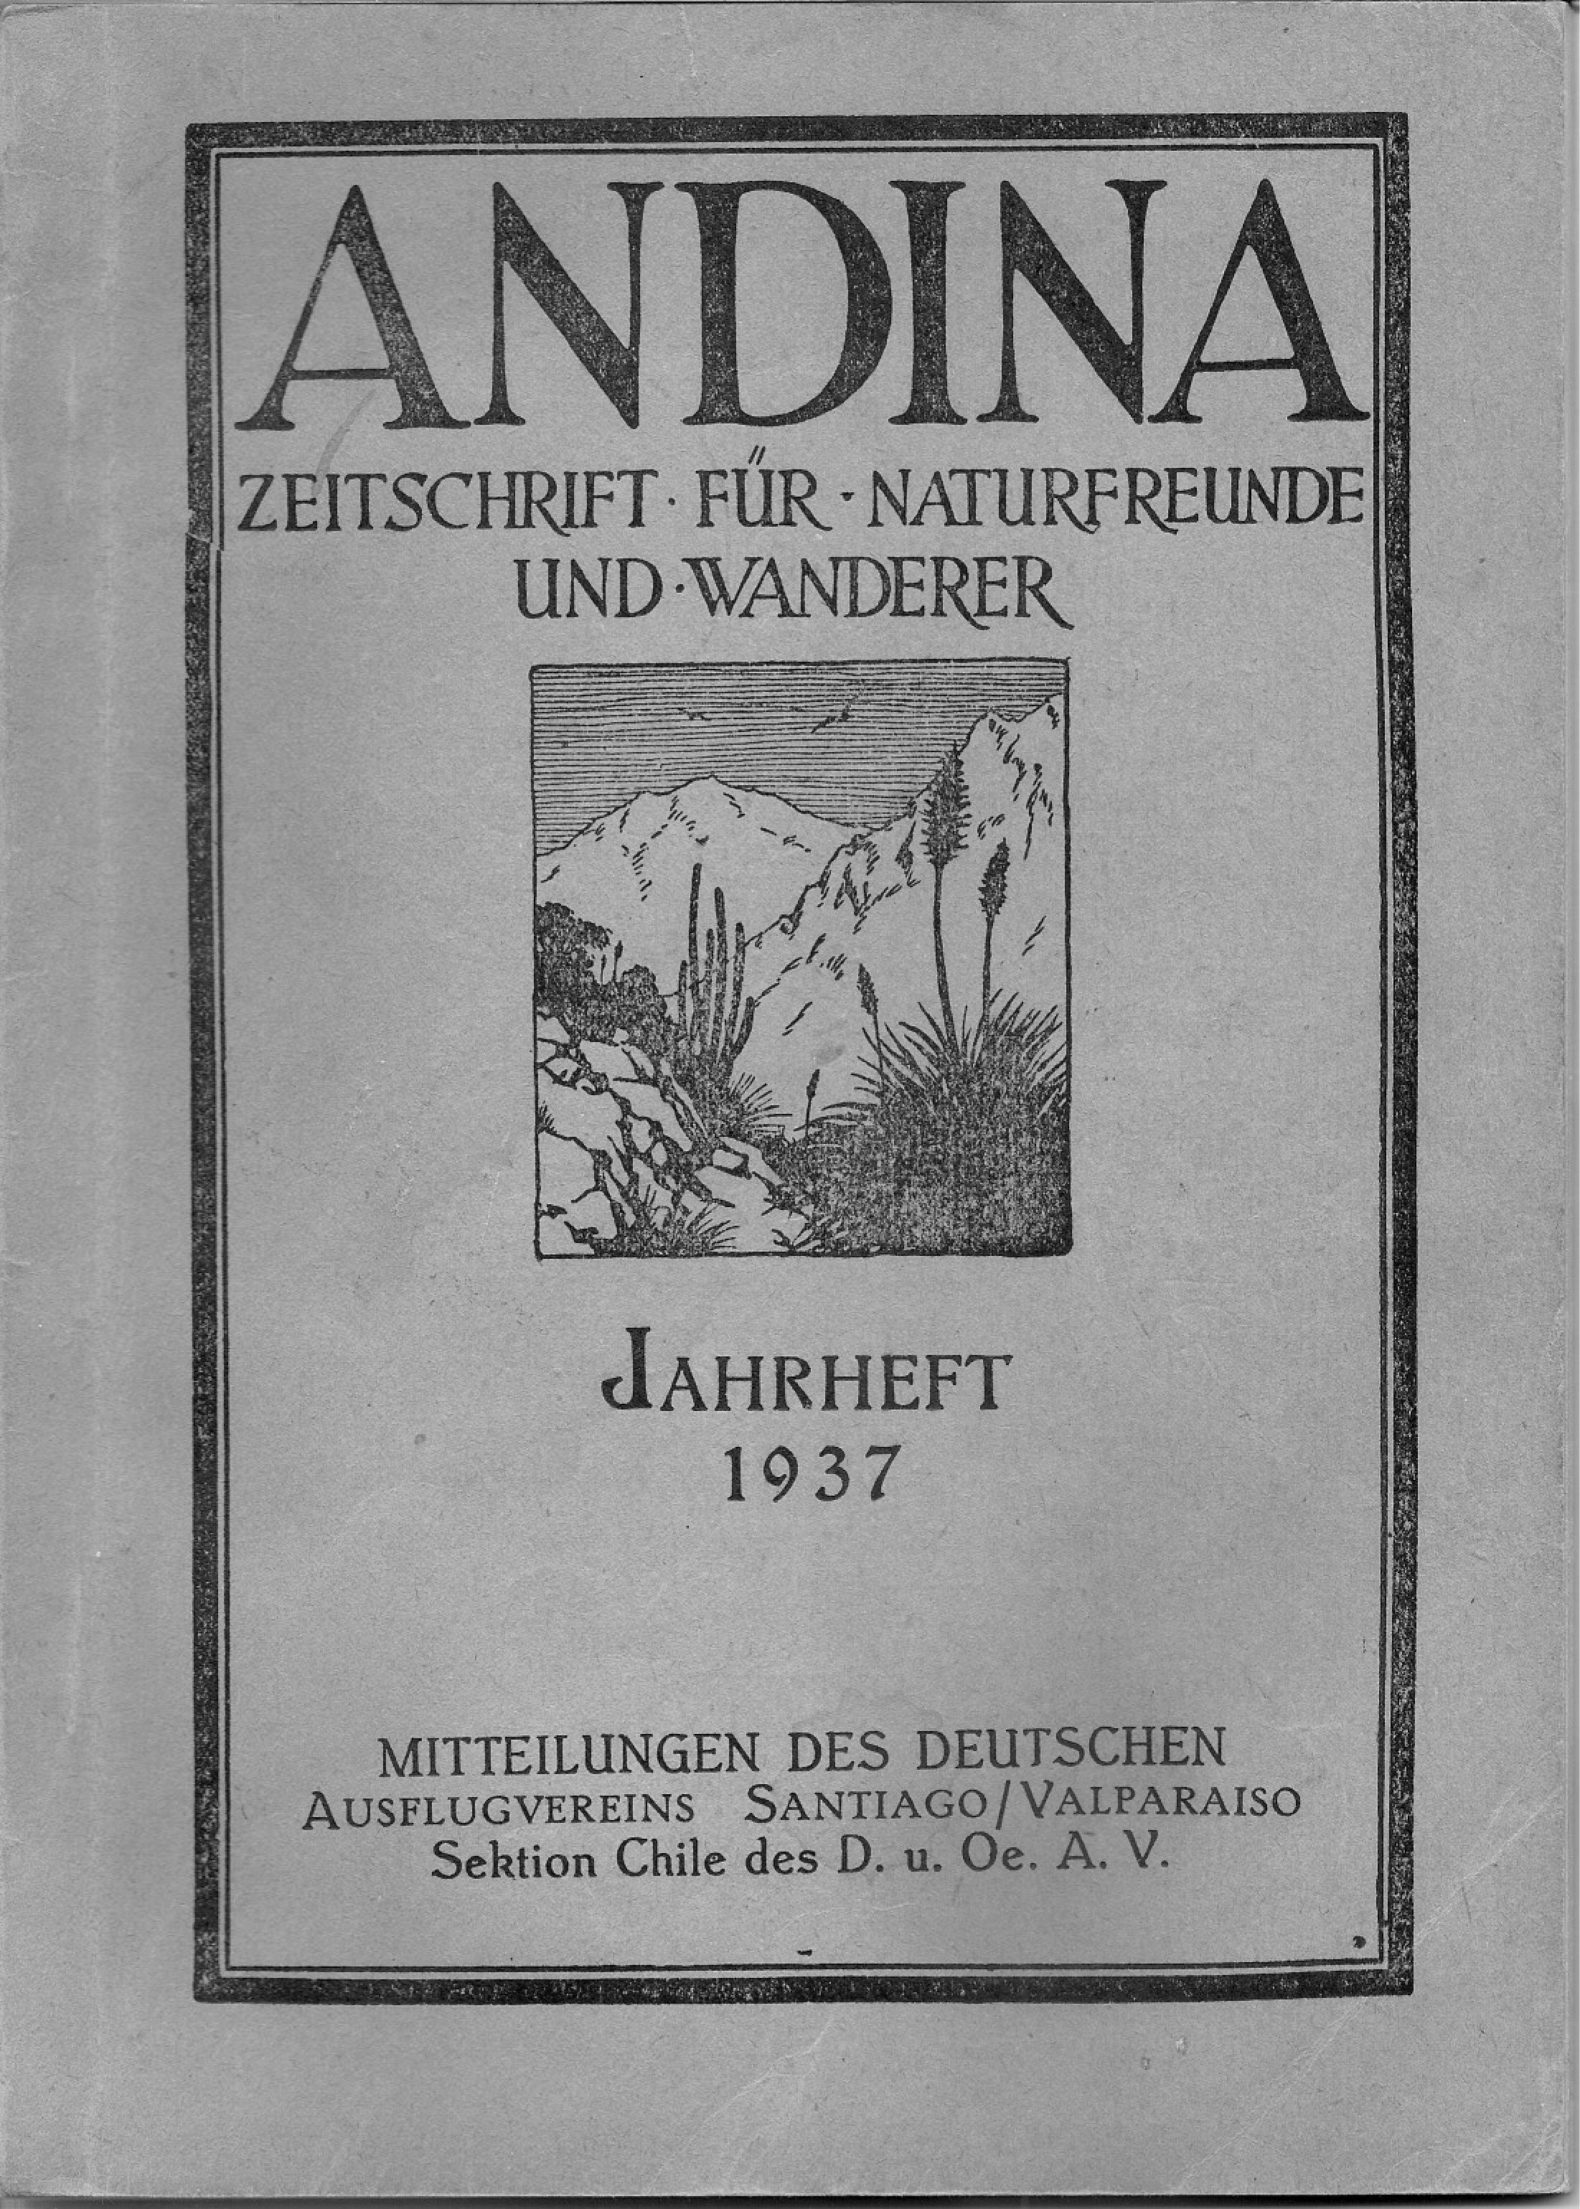 Primer Cruce del Cordón Gloria-Fortuna – Traducción del artículo de 1937